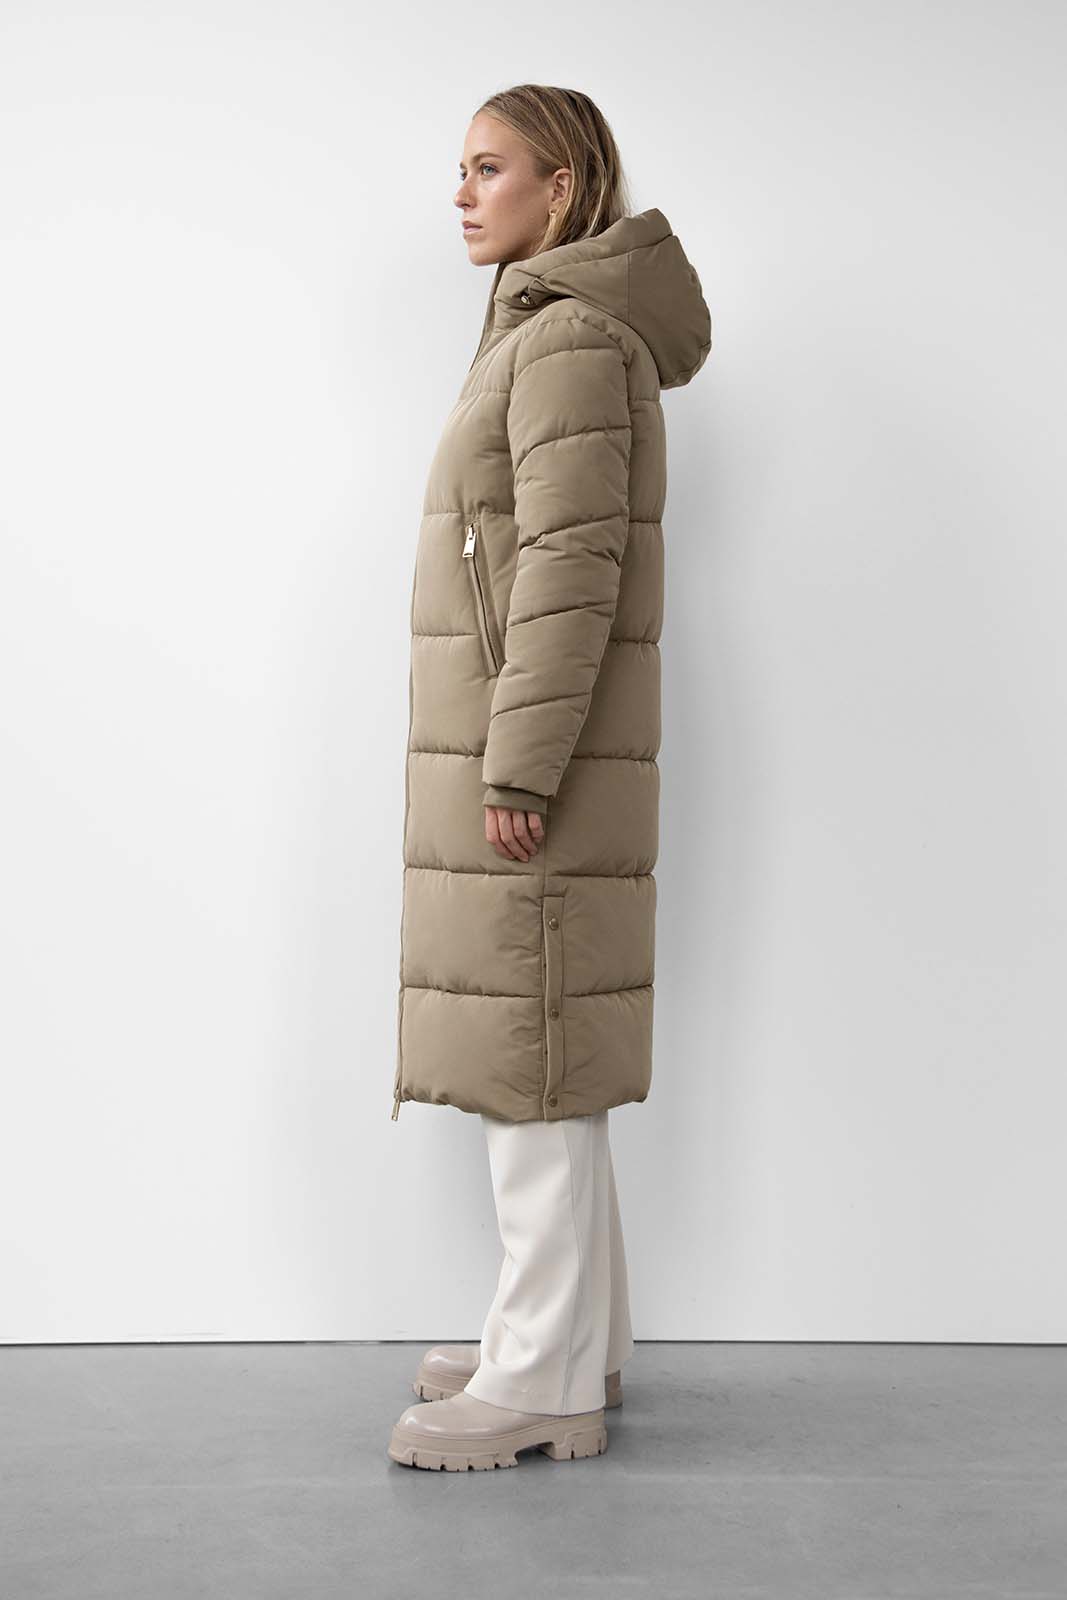 Long, puffer coat, women